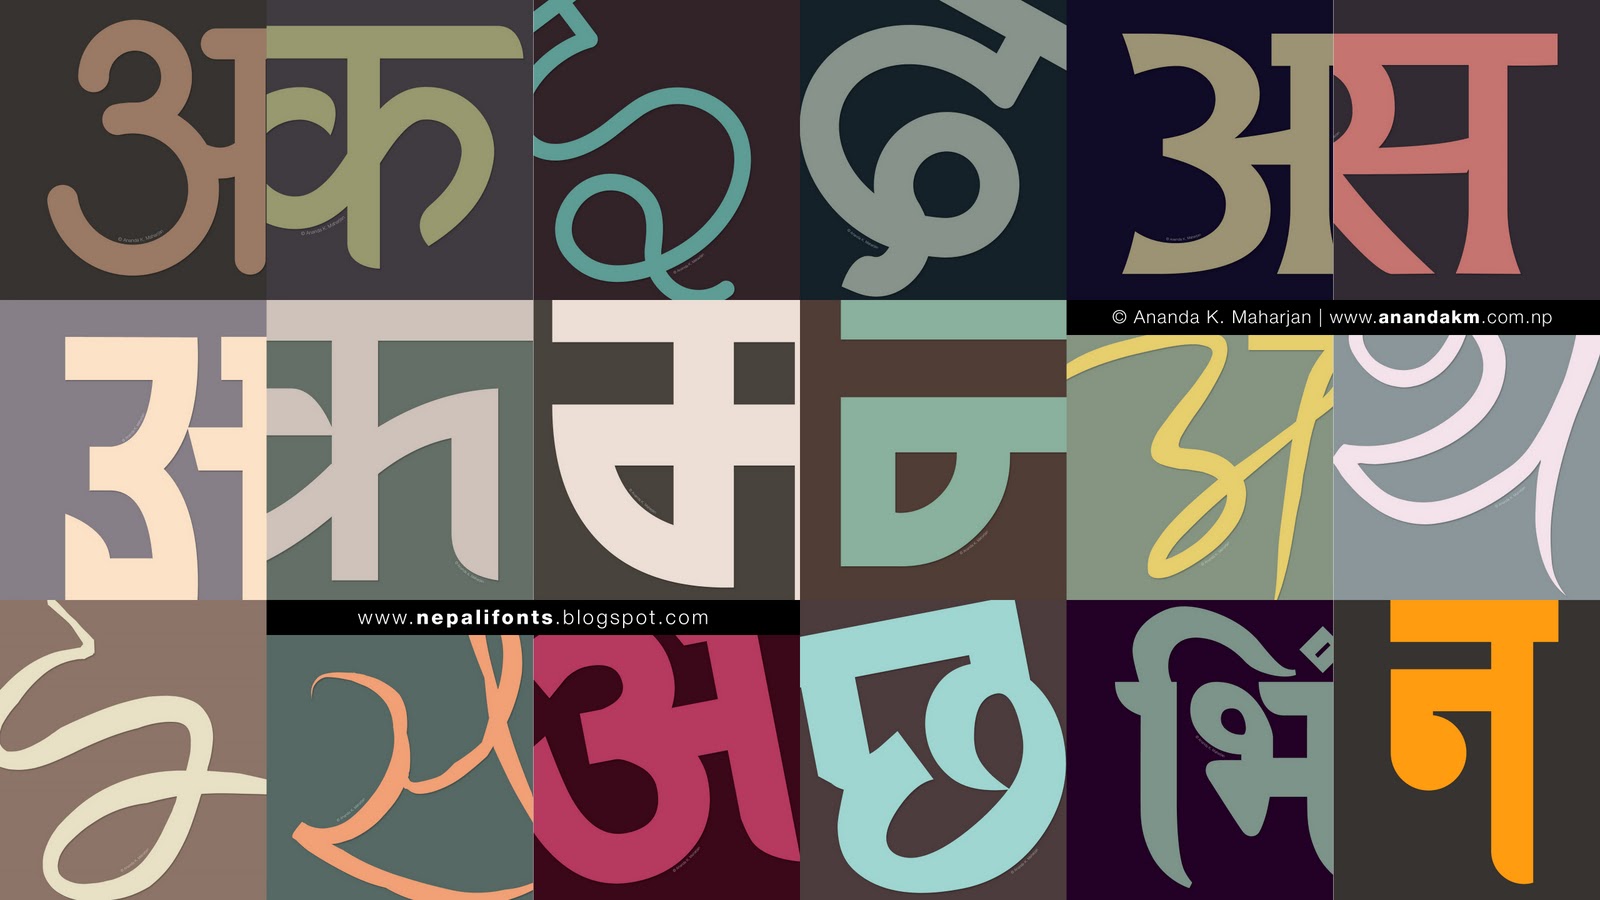 anuradha pc sinhala font download